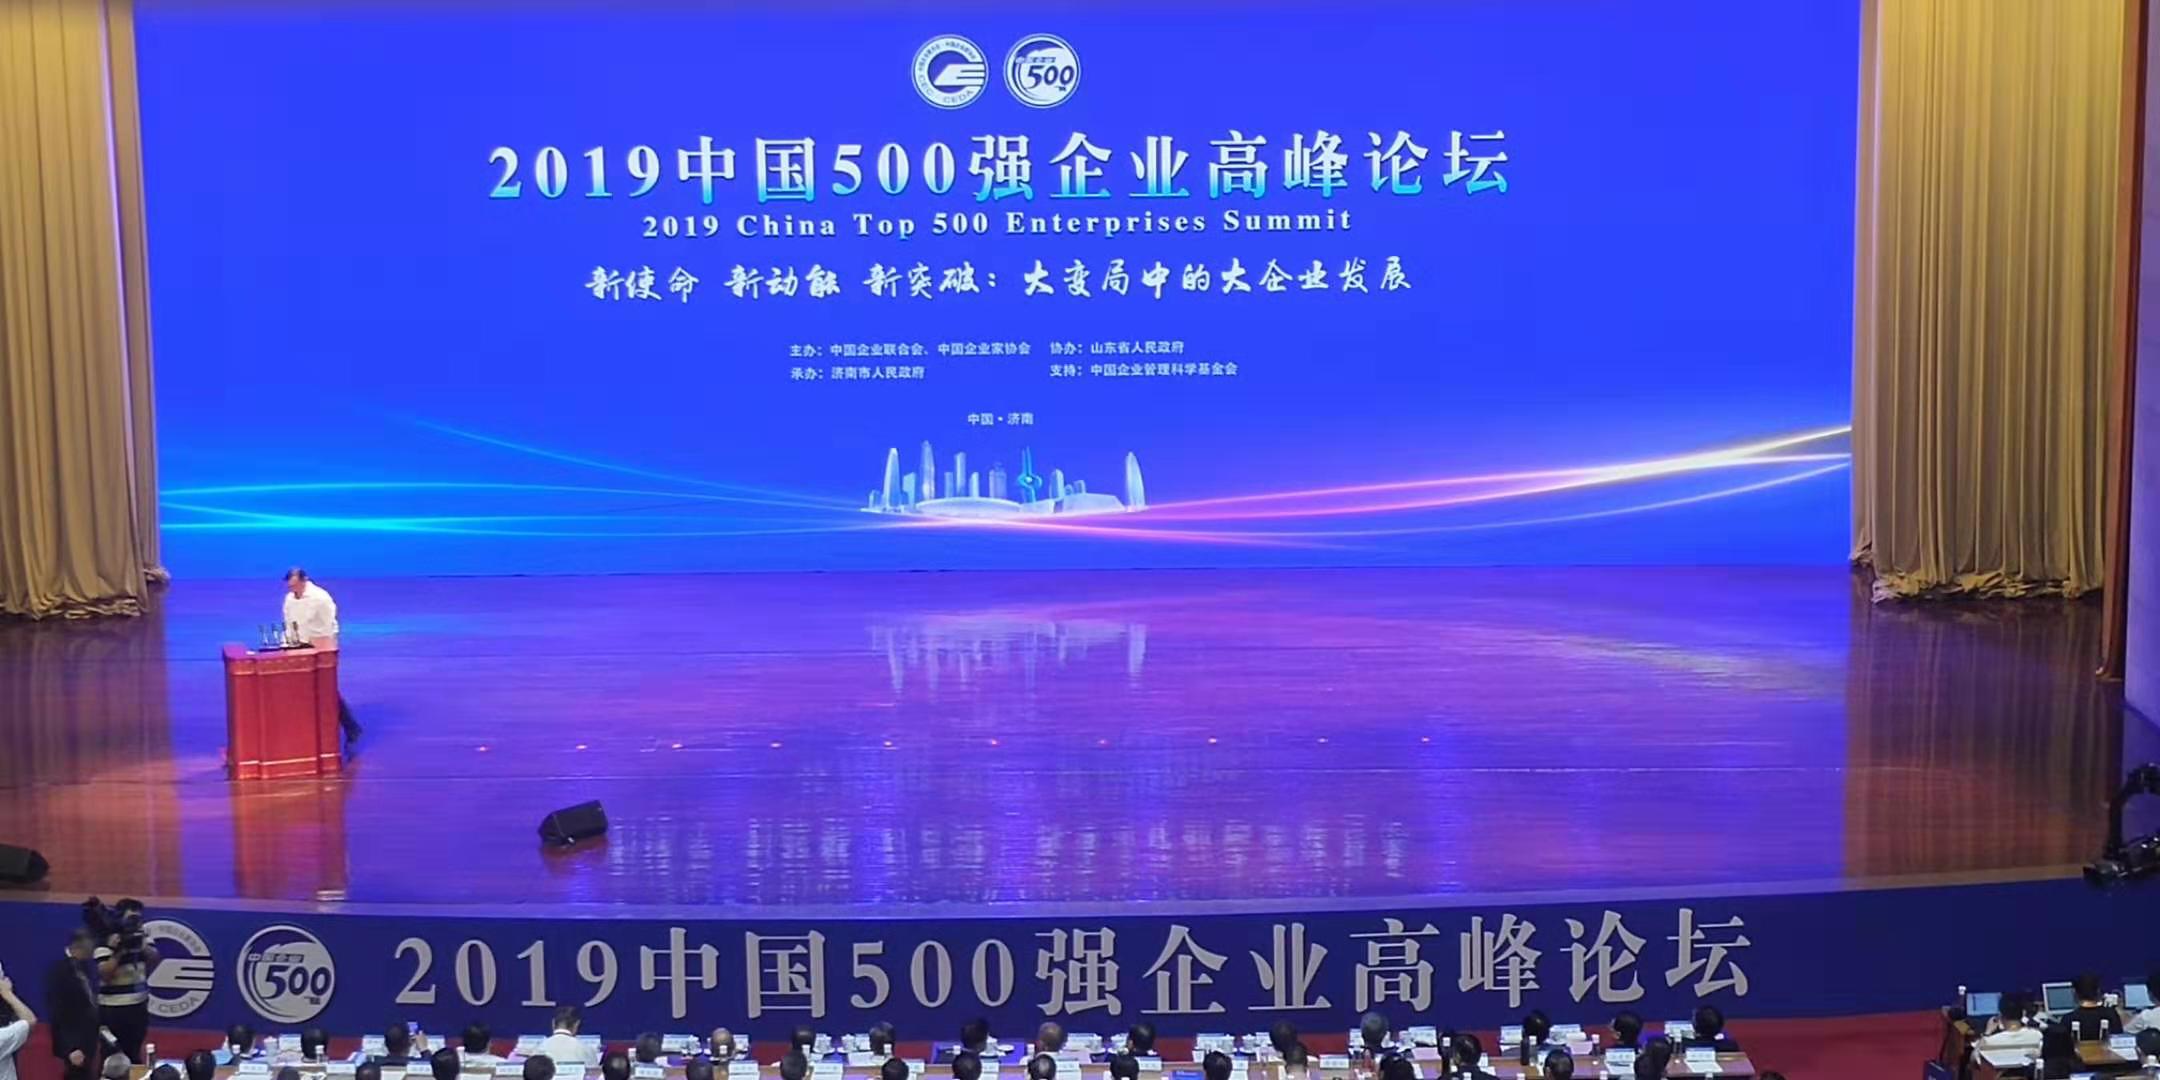 2019中國企業500強、製造業500強發佈，山東澳门太阳集团實業集團分列第411位、第195位！